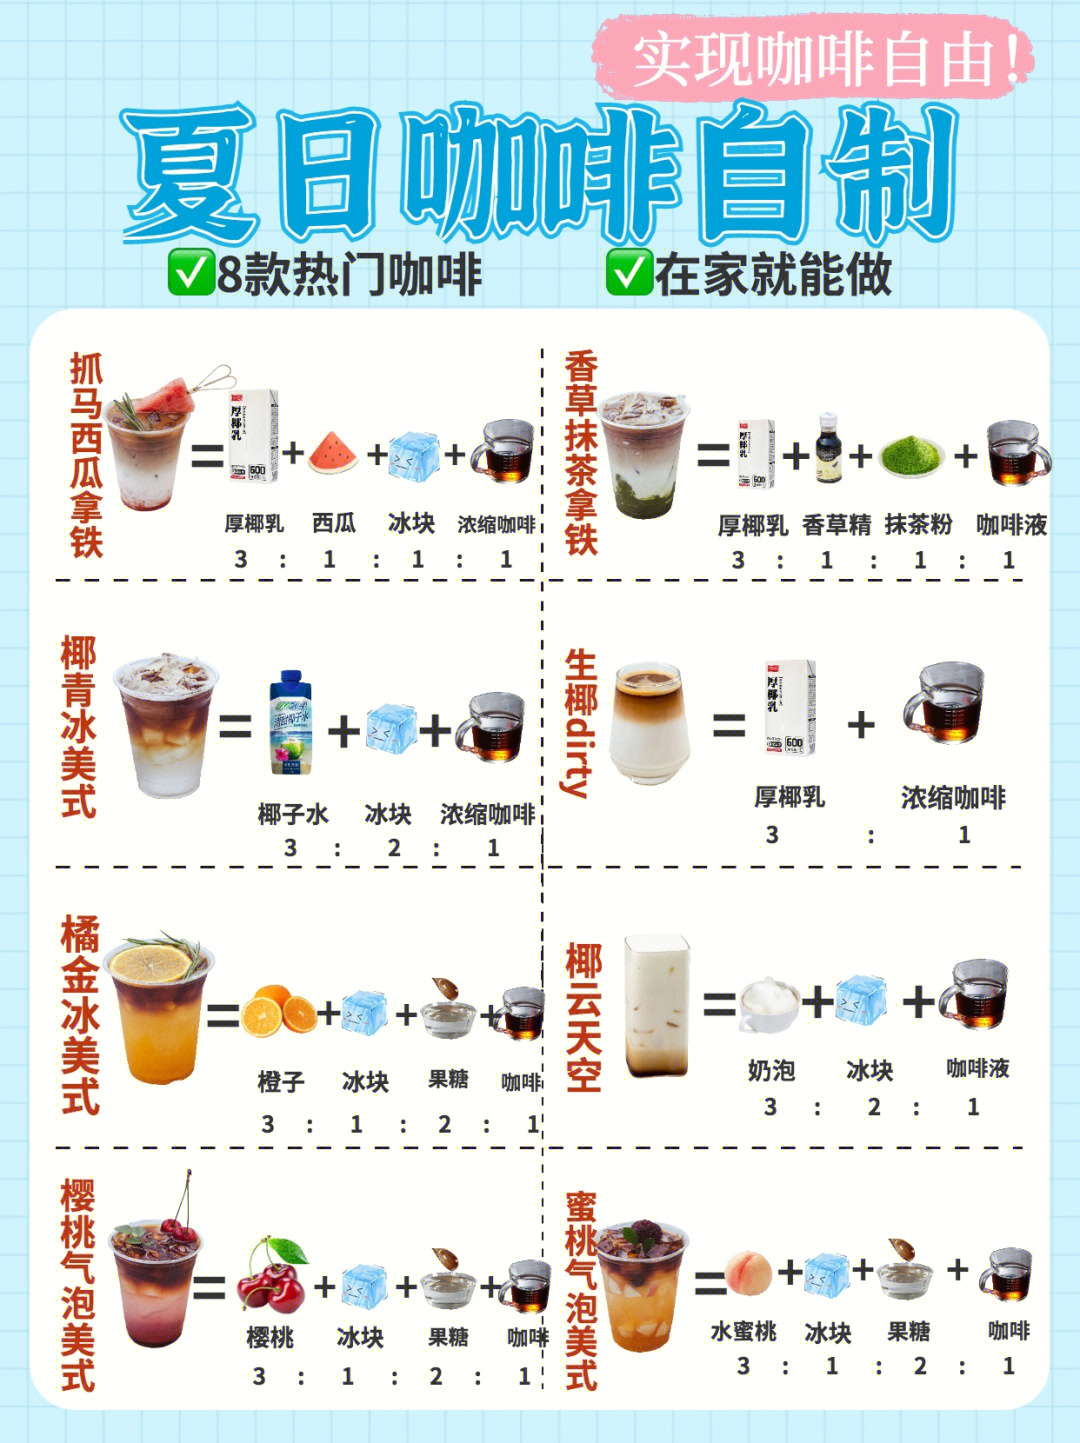 夏日冷饮自制咖啡75配方大公开92